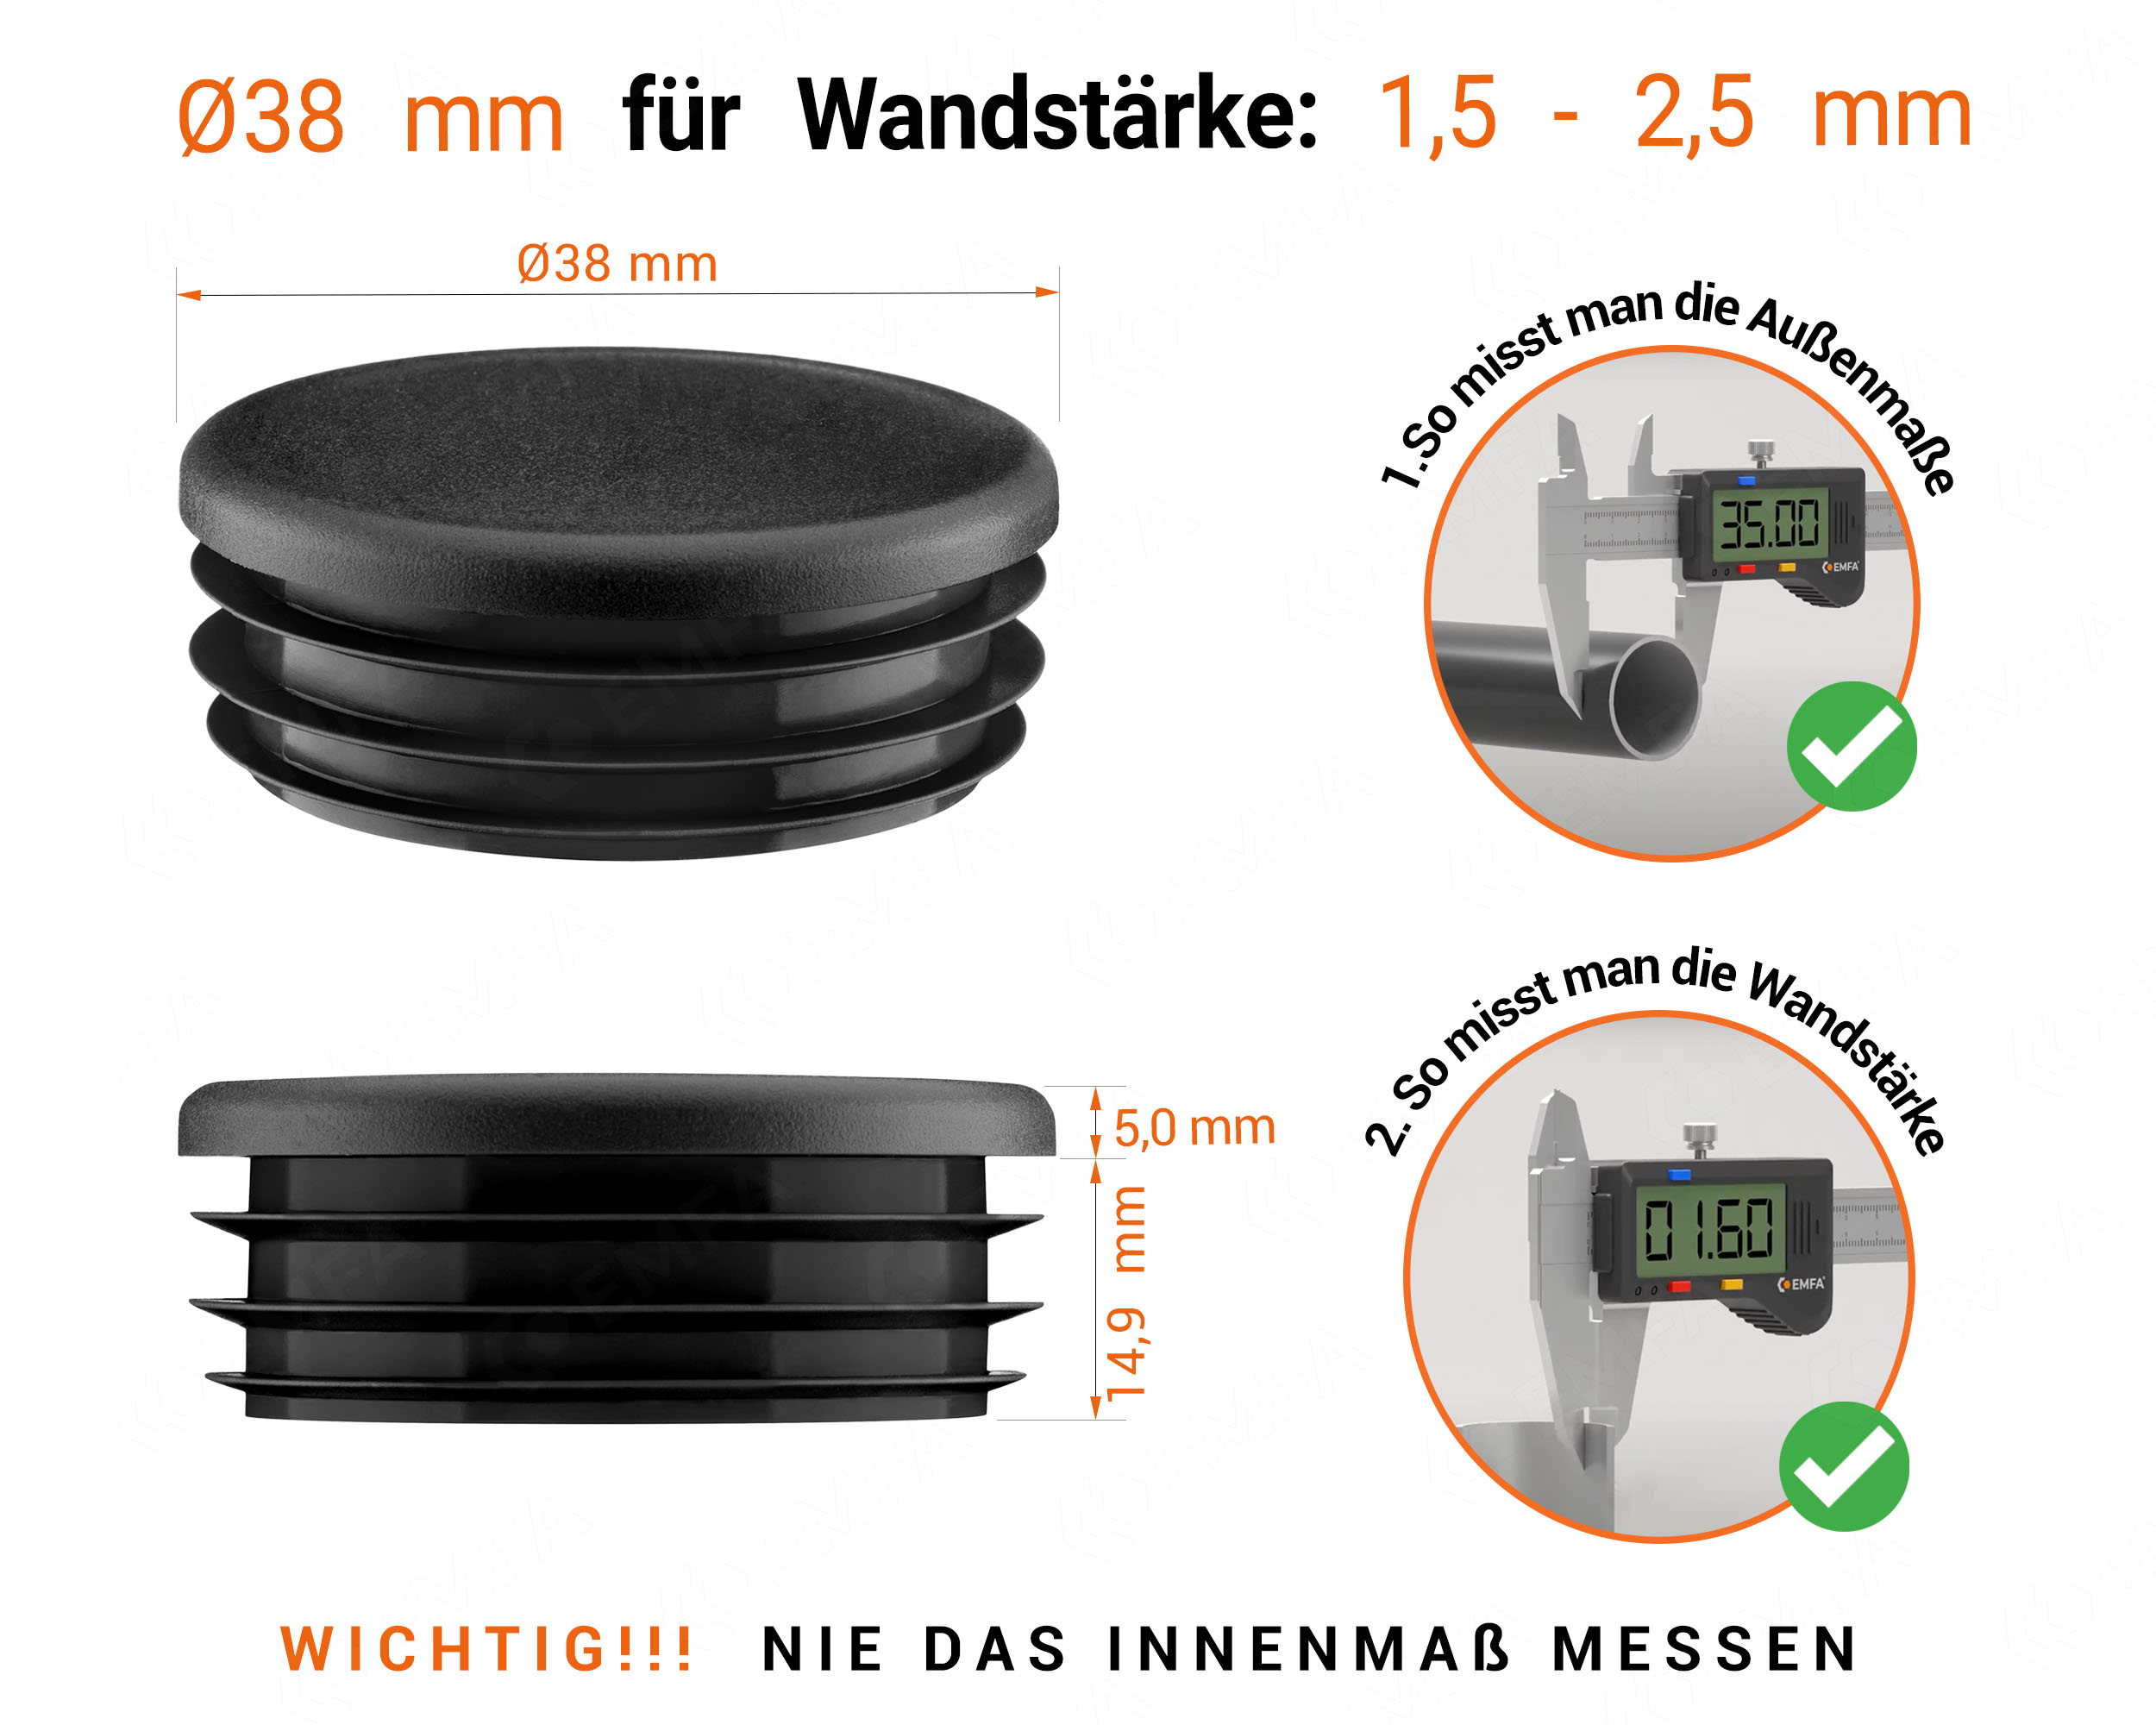 Schwarze Endkappe für Rundrohre in der Größe 38 mm mit technischen Abmessungen und Anleitung für korrekte Messung